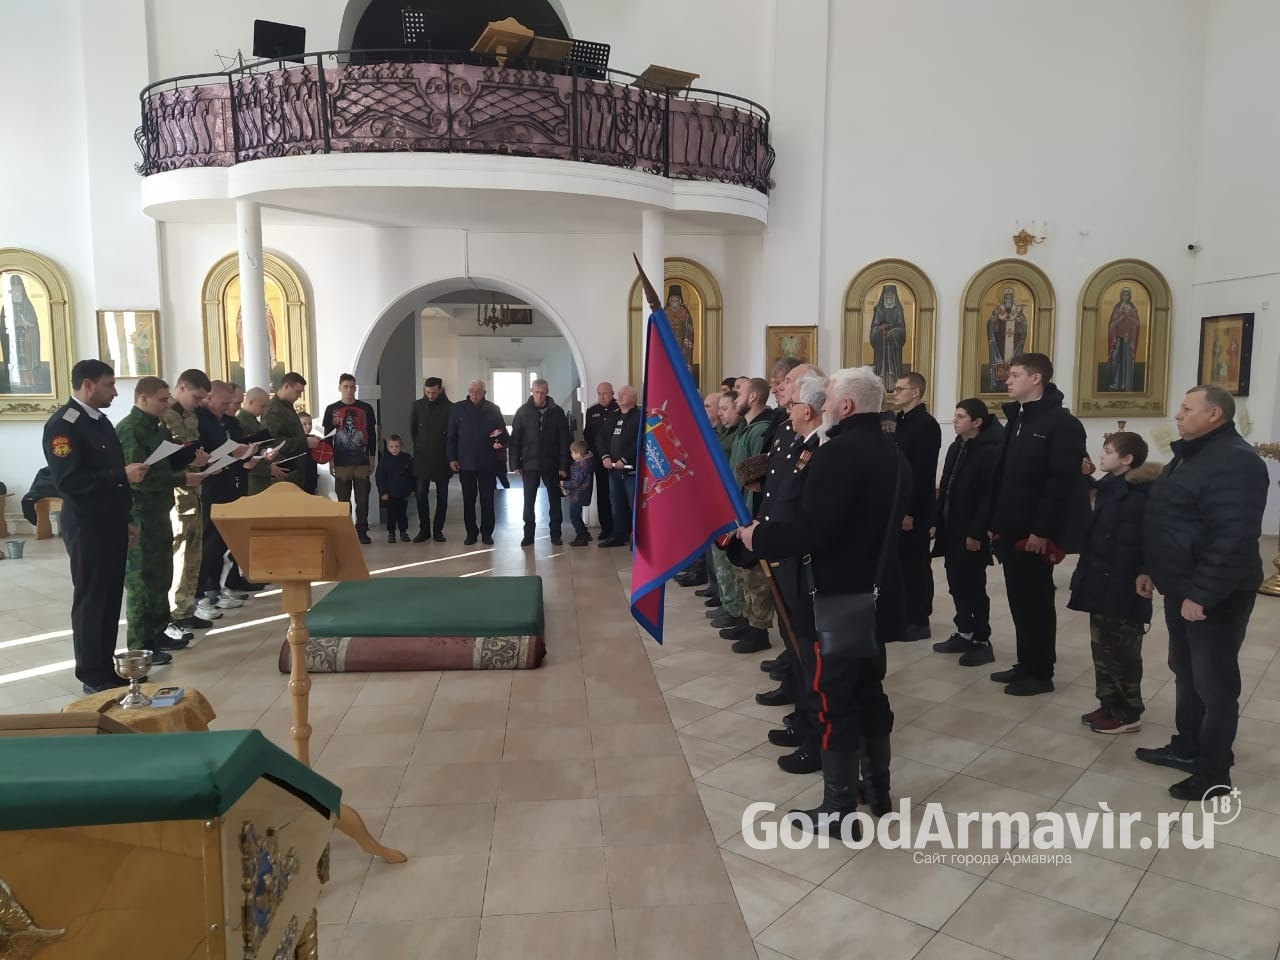 Курсанты военно-патриотического клуба "Гармата" присутствовали на присяге казаков в Армавире 